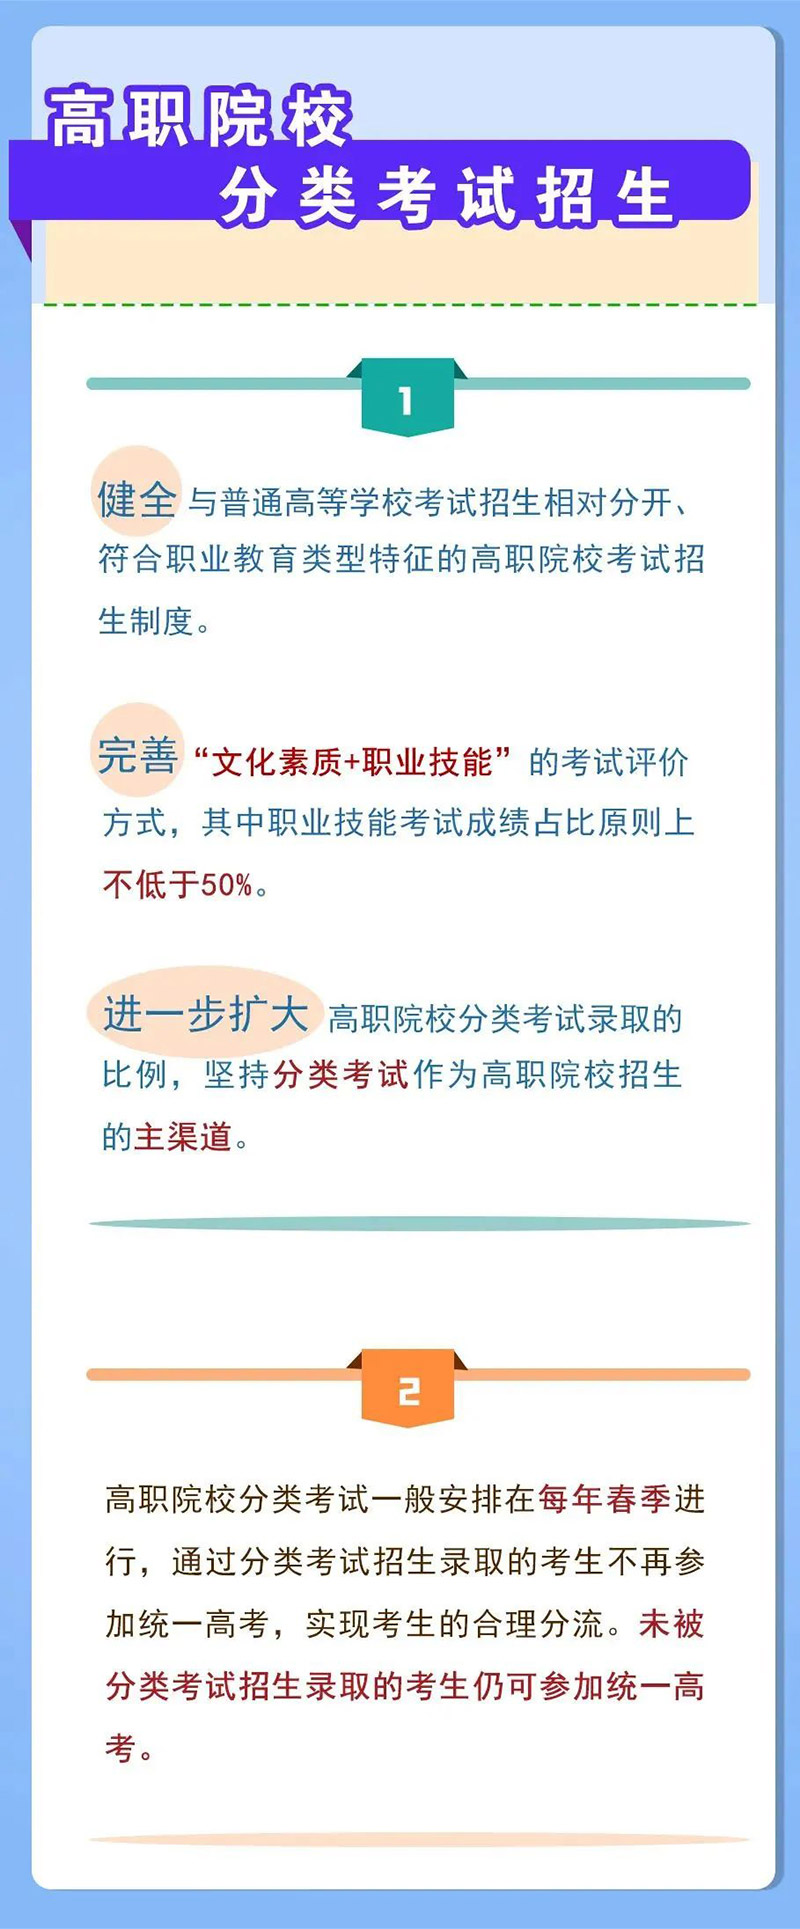 河南省高考综合改革方案-高职院校分类考试招生